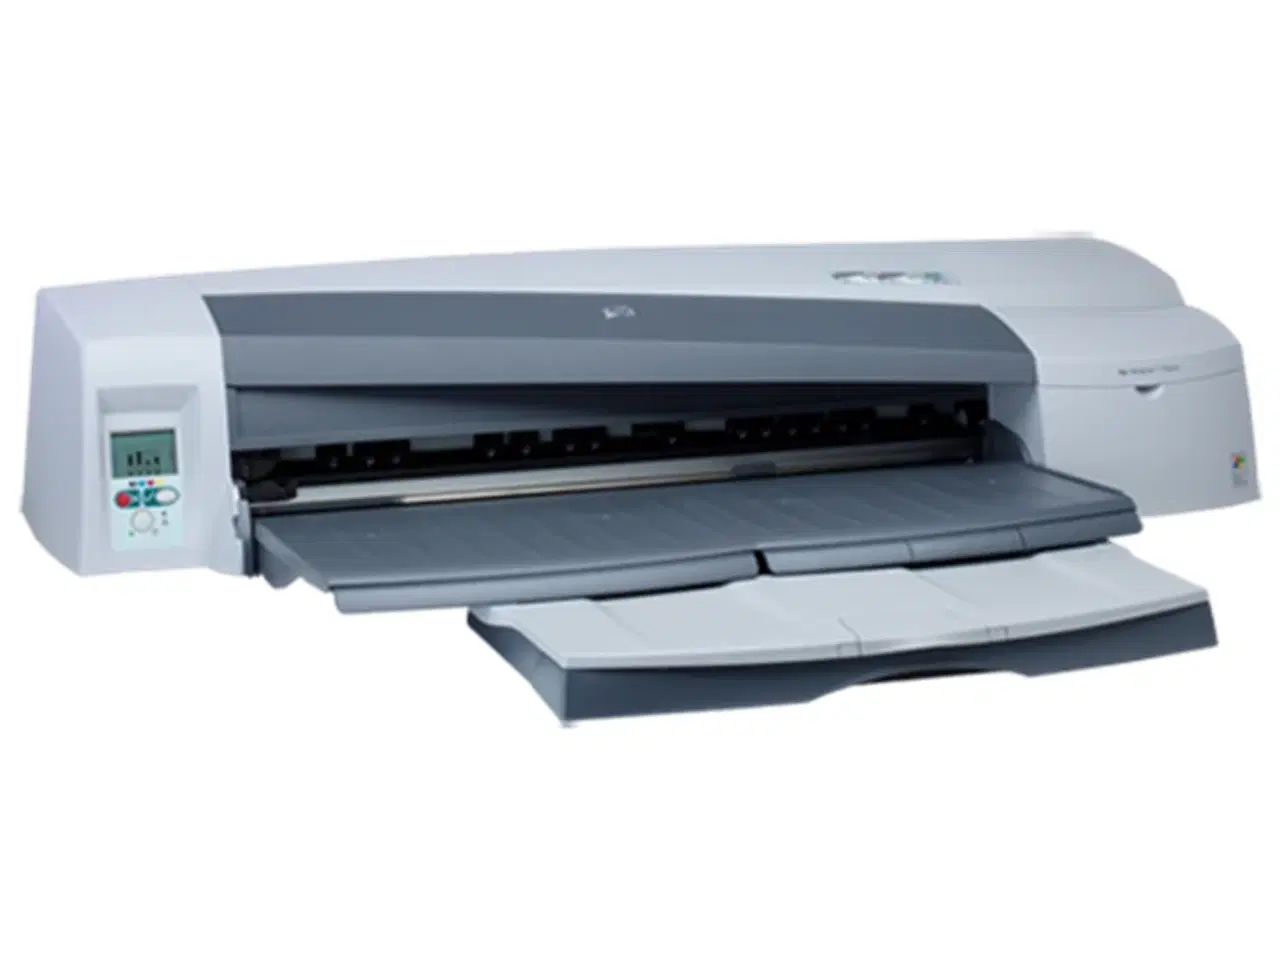 Billede 1 - HP Designjet til store formater: 600x840 mm.